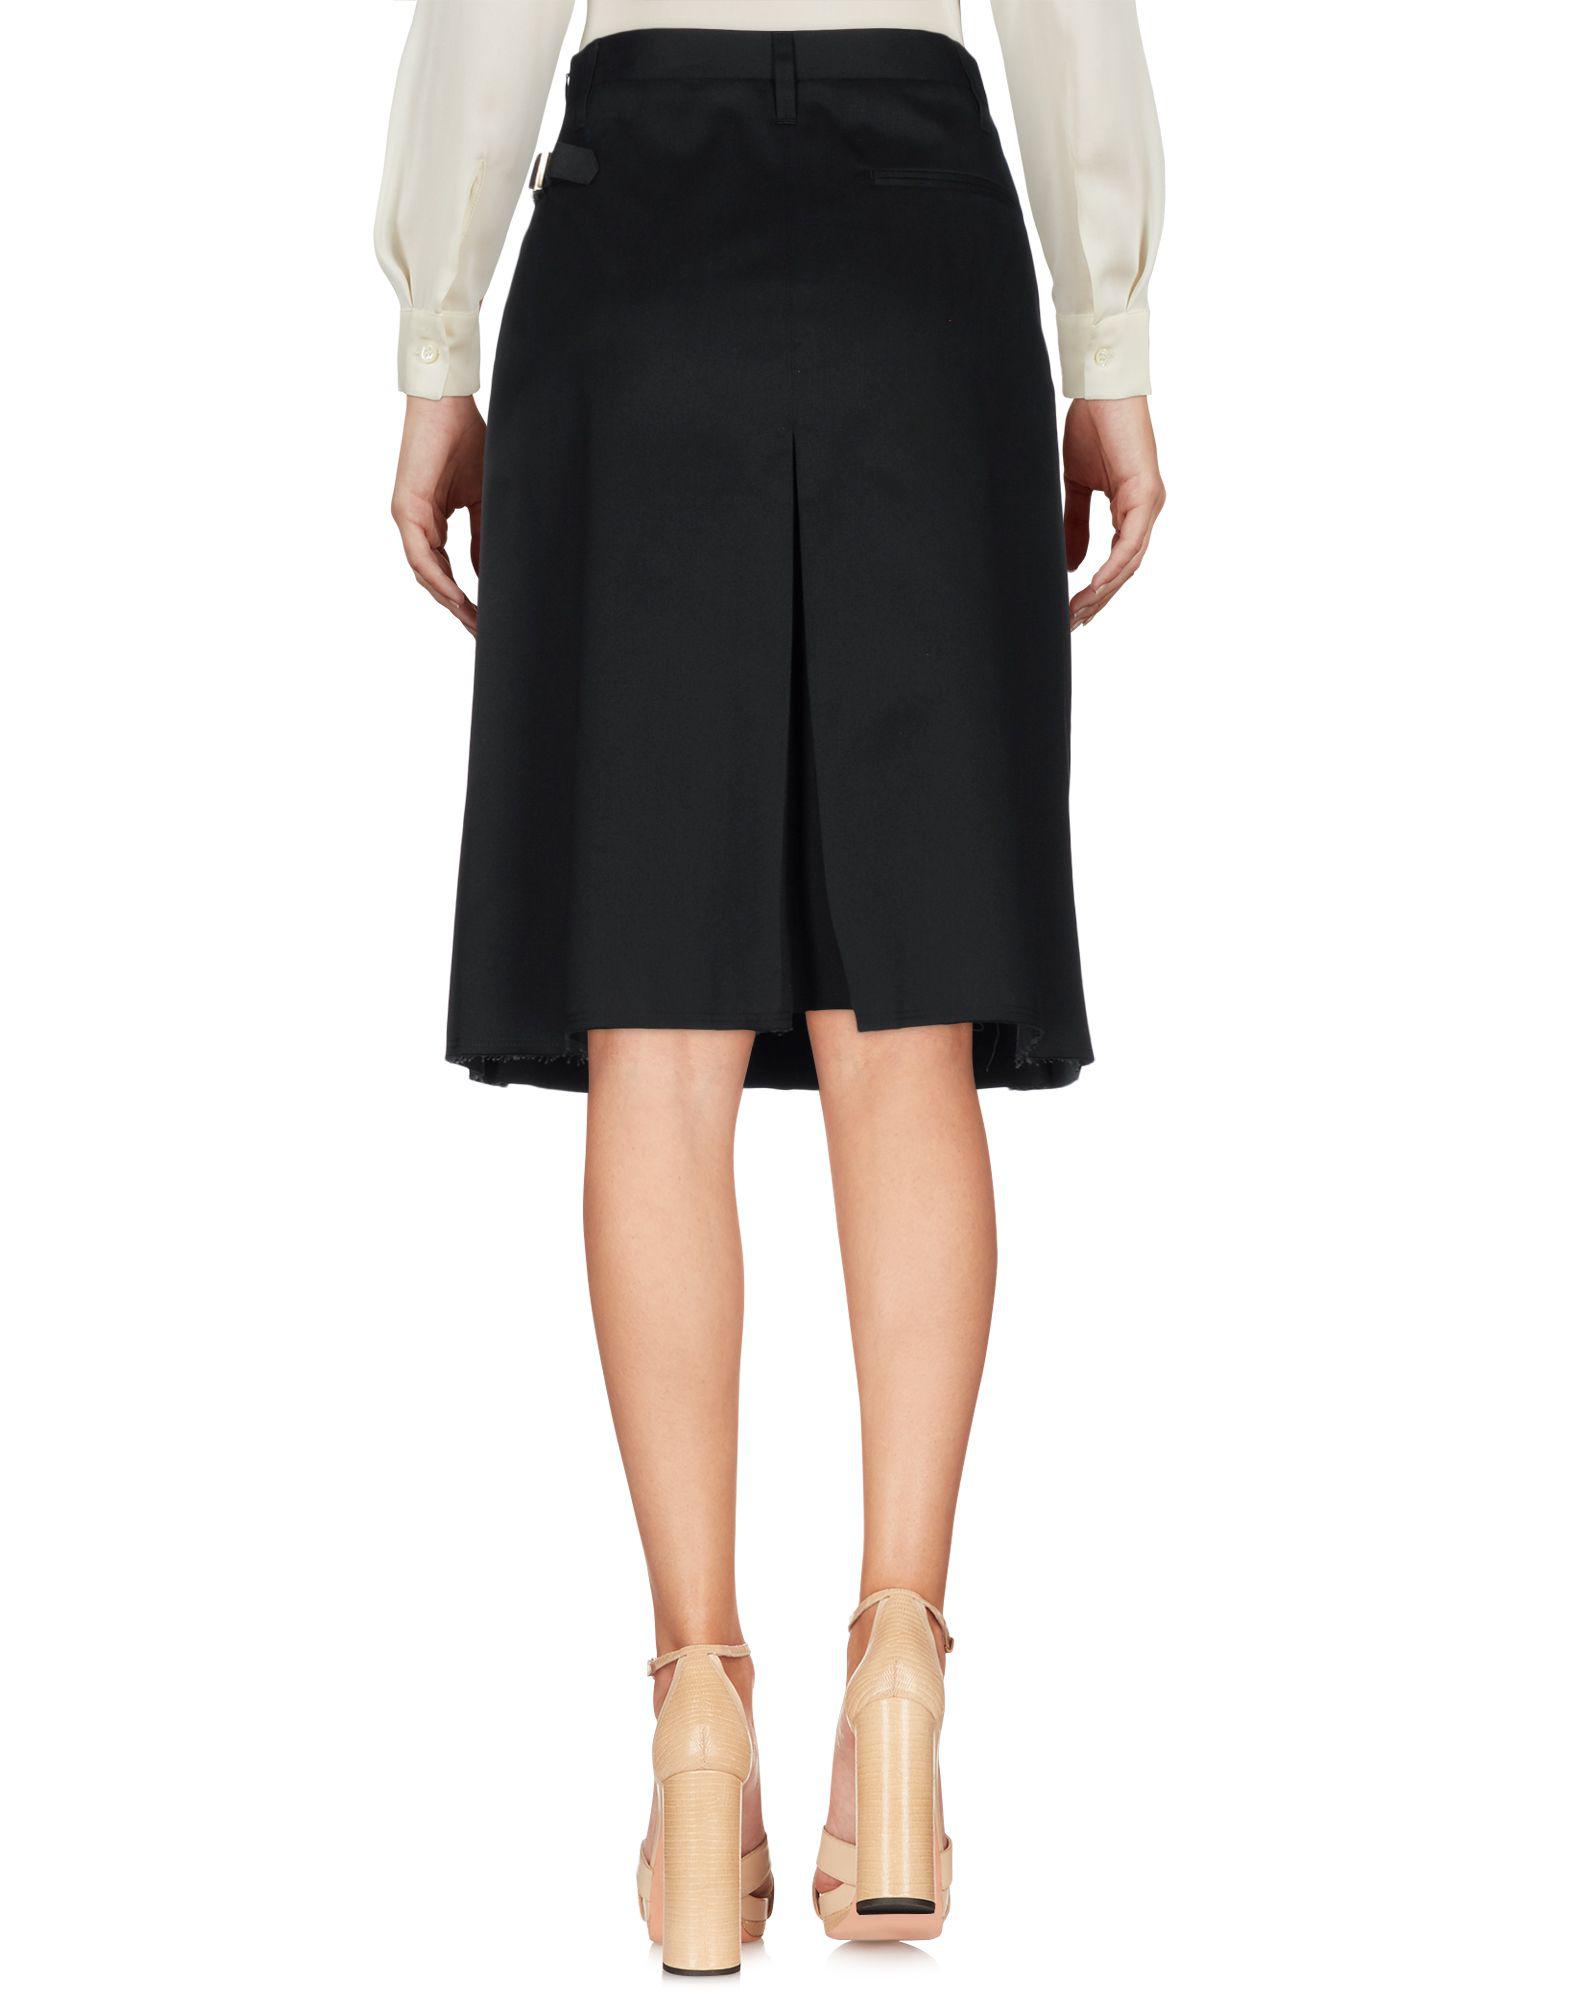 Golden Goose Deluxe Brand Cotton Knee Length Skirt in Black - Lyst